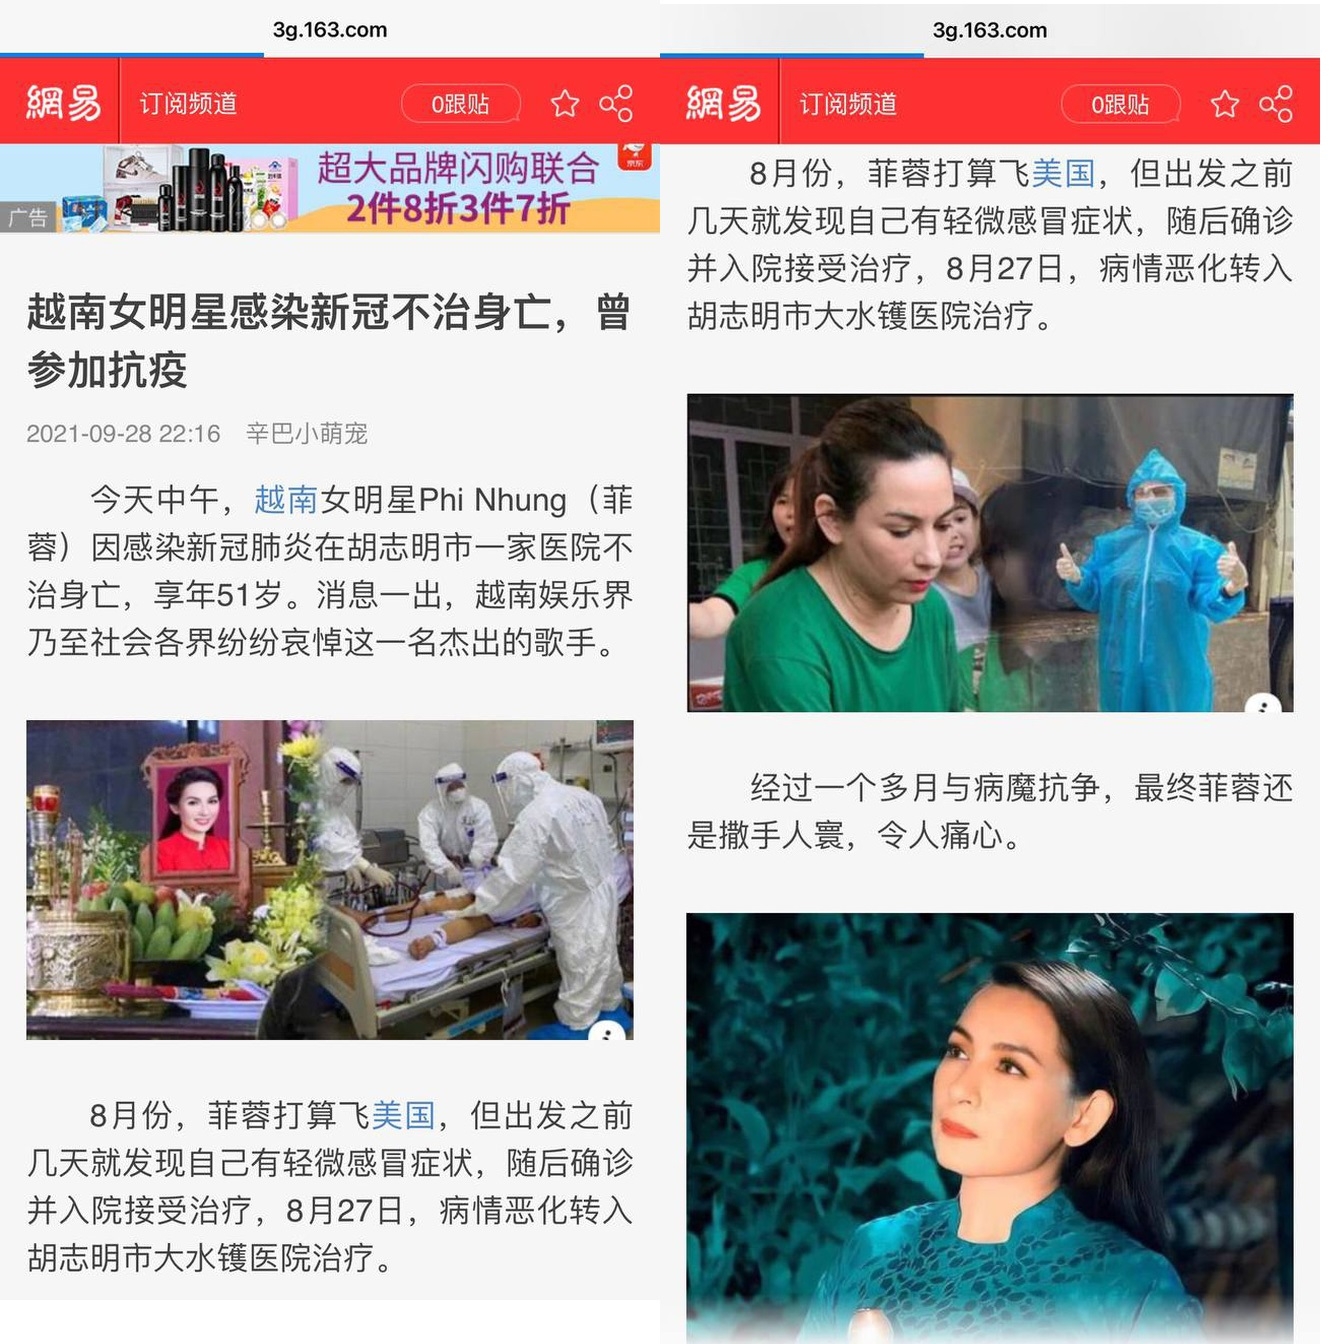 Báo Trung Quốc đưa tin về sự ra đi của Phi Nhung